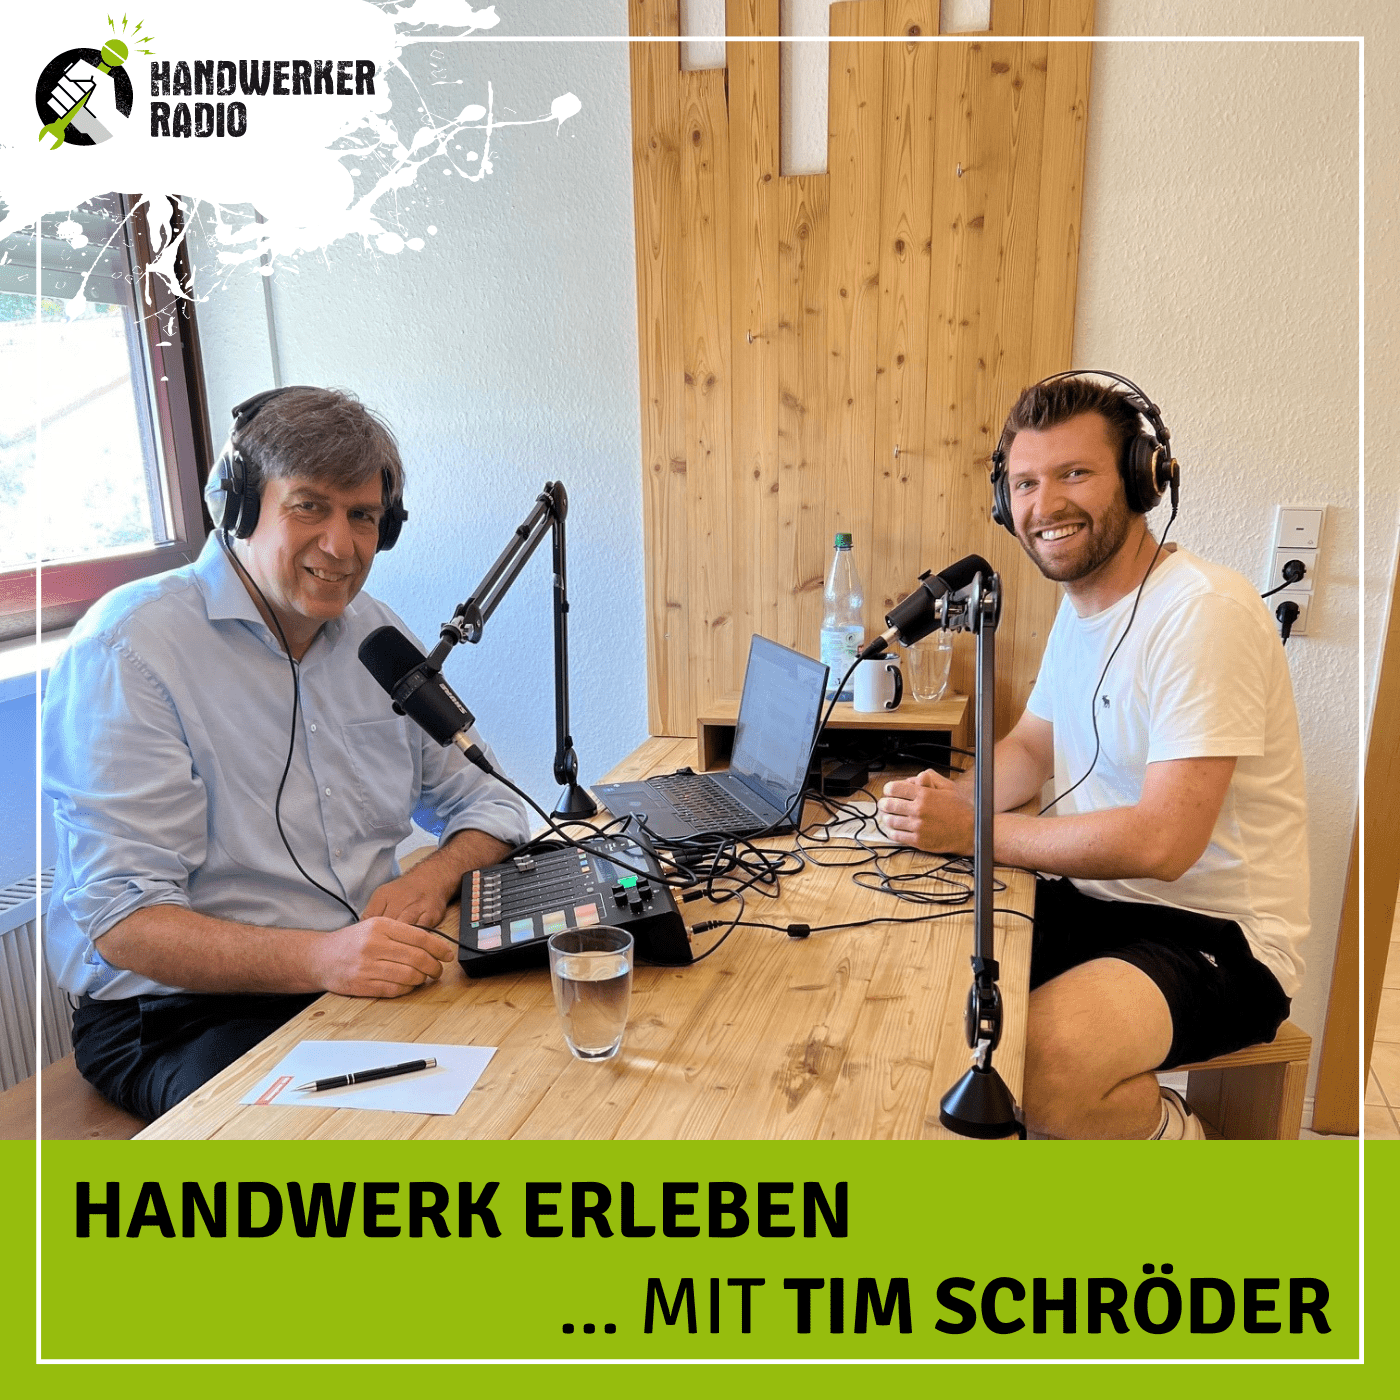 #86 Tim Schröder, wie ist aus deinem Onlineshop „Mr. Timber“ ein Handwerksbetrieb entstanden?